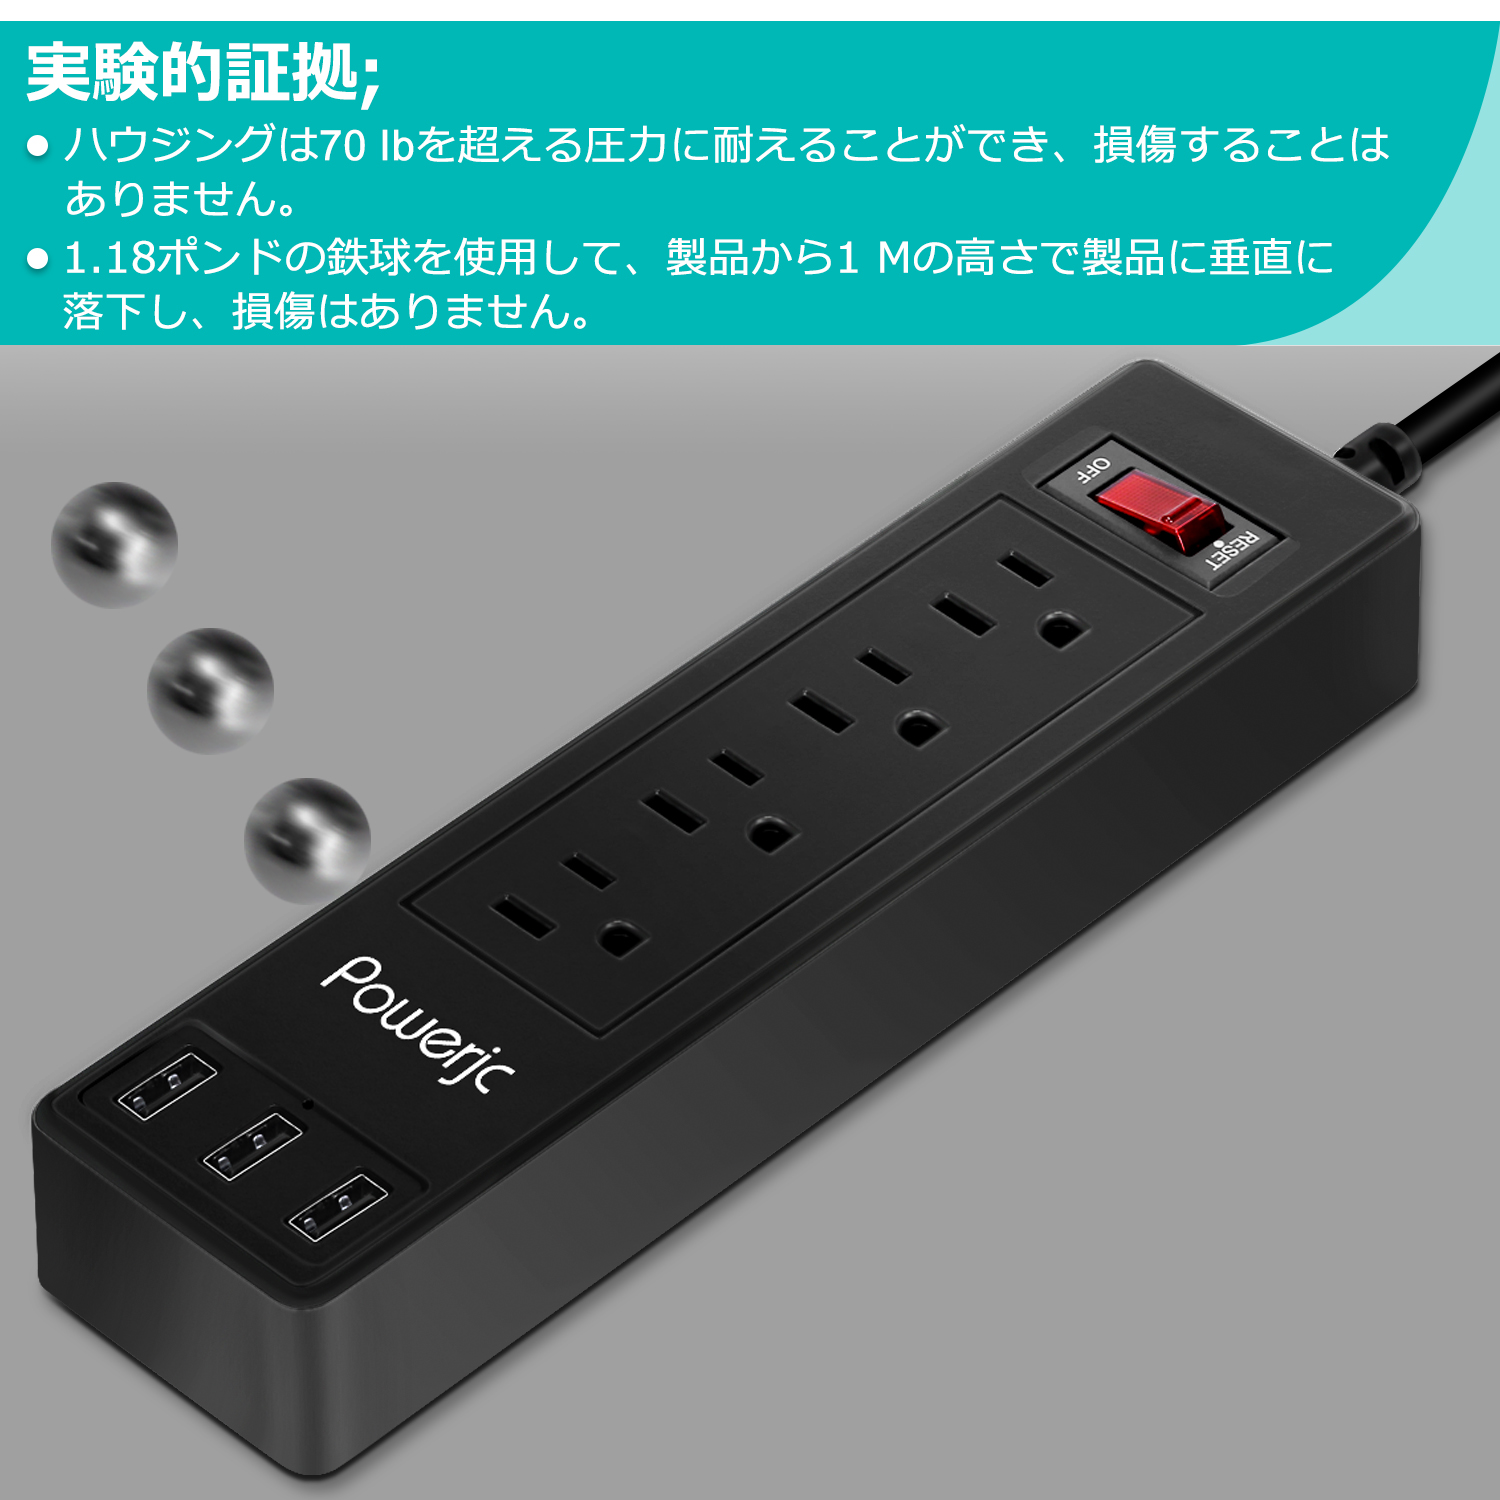 Powerjc電源タップ USB コンセント雷ガード4個口 1.5m 過負荷保護 省エネブラック 出力1500w